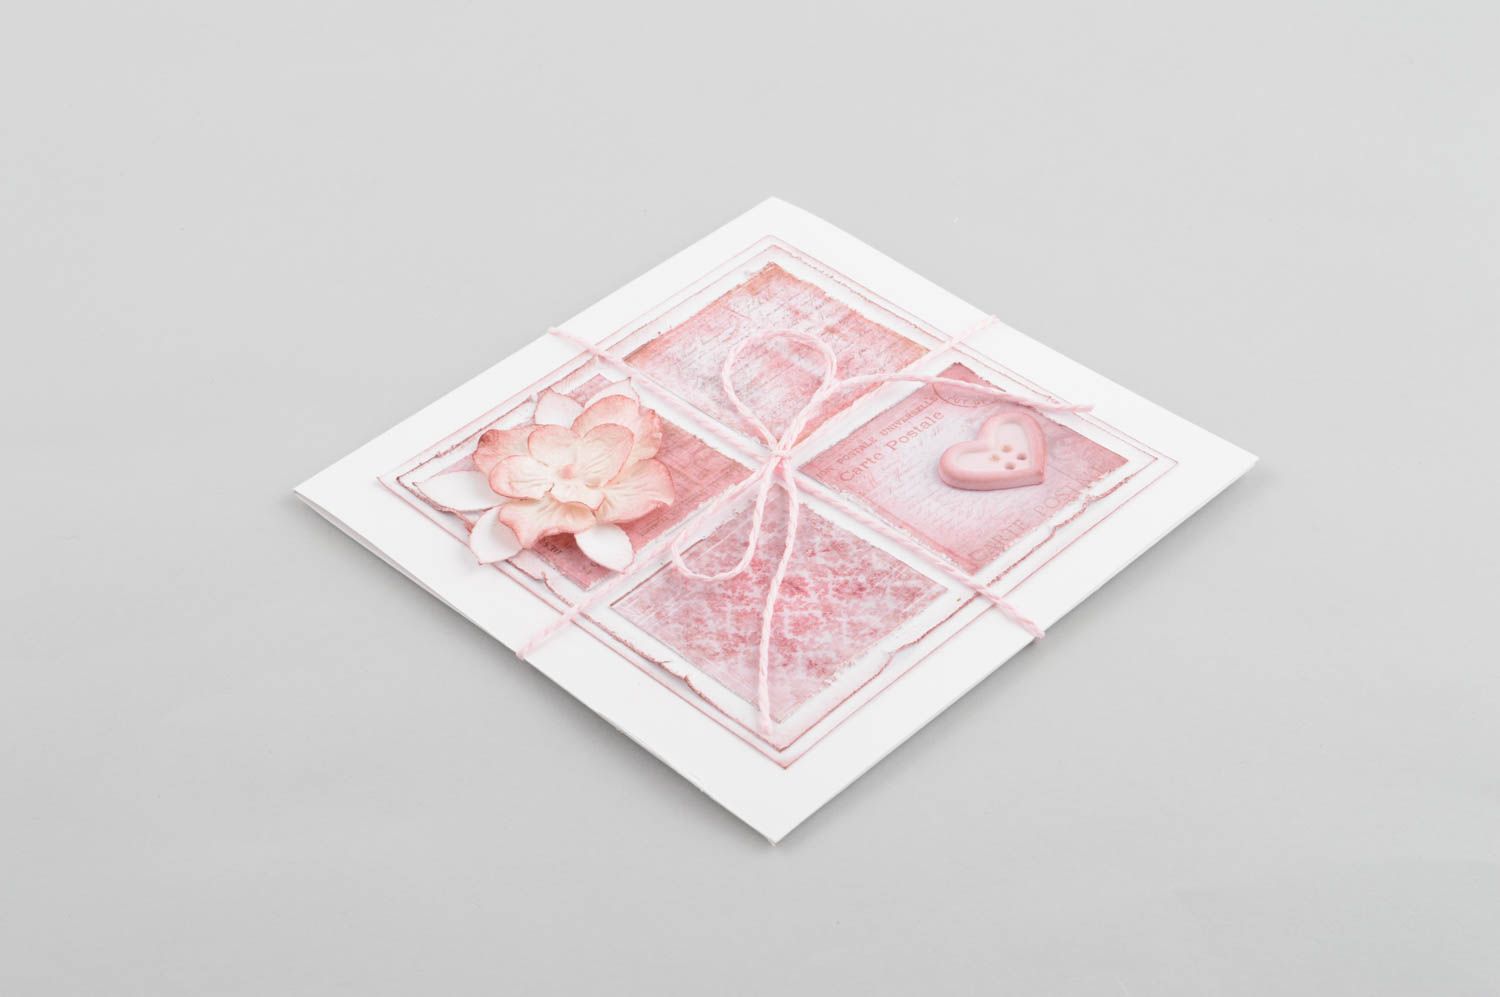 Handmade Papier CD Hülle kreatives Geschenk schöne Verpackung rosa hübsch foto 3